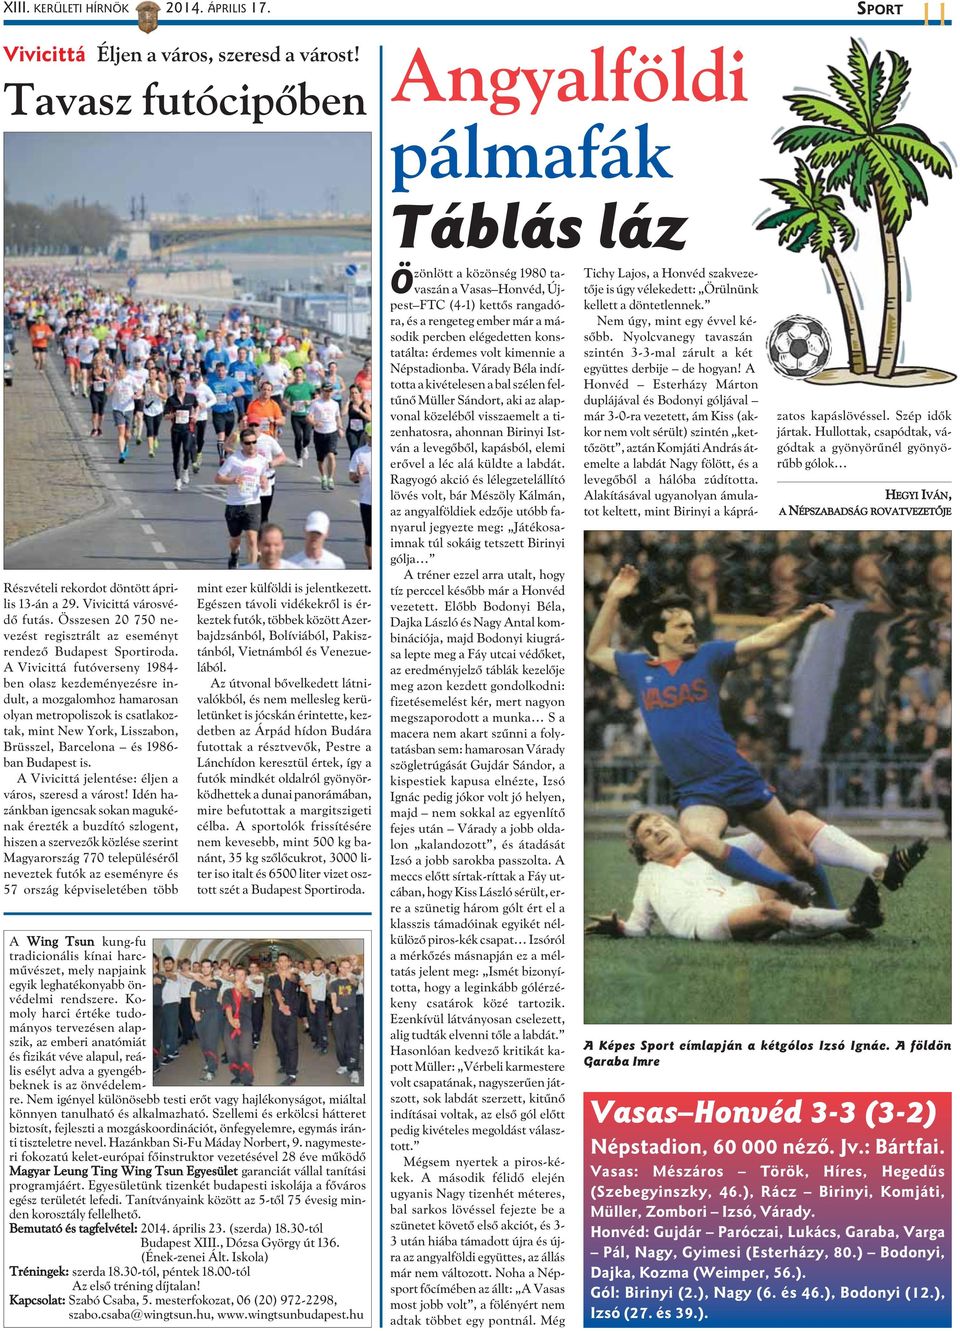 A Vivicittá futóverseny 1984- ben olasz kezdeményezésre indult, a mozgalomhoz hamarosan olyan metropoliszok is csatlakoztak, mint New York, Lisszabon, Brüsszel, Barcelona és 1986- ban Budapest is.